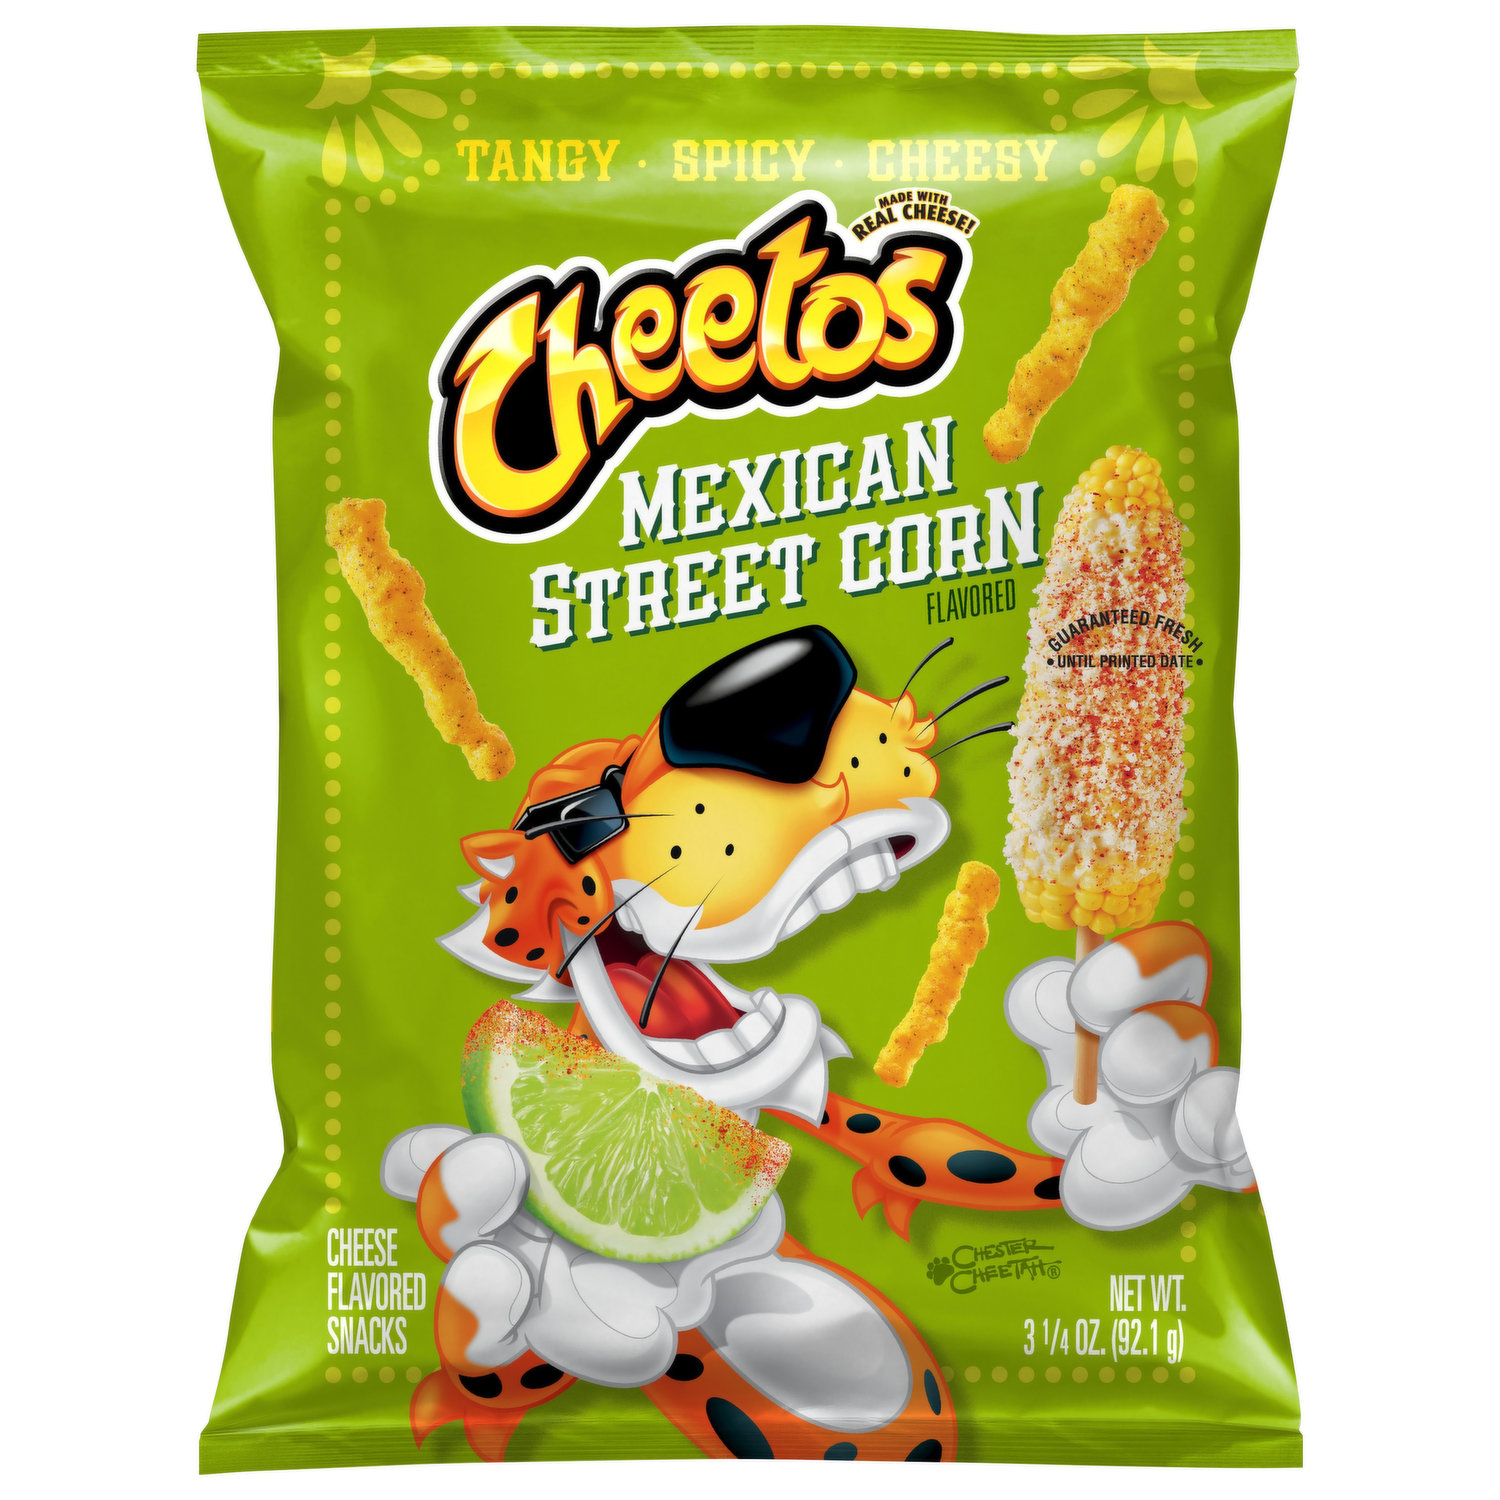 CHESTERS Fries Flamin Hot Corn & Potato Snacks Plastic Bag - 1 OZ - Vons